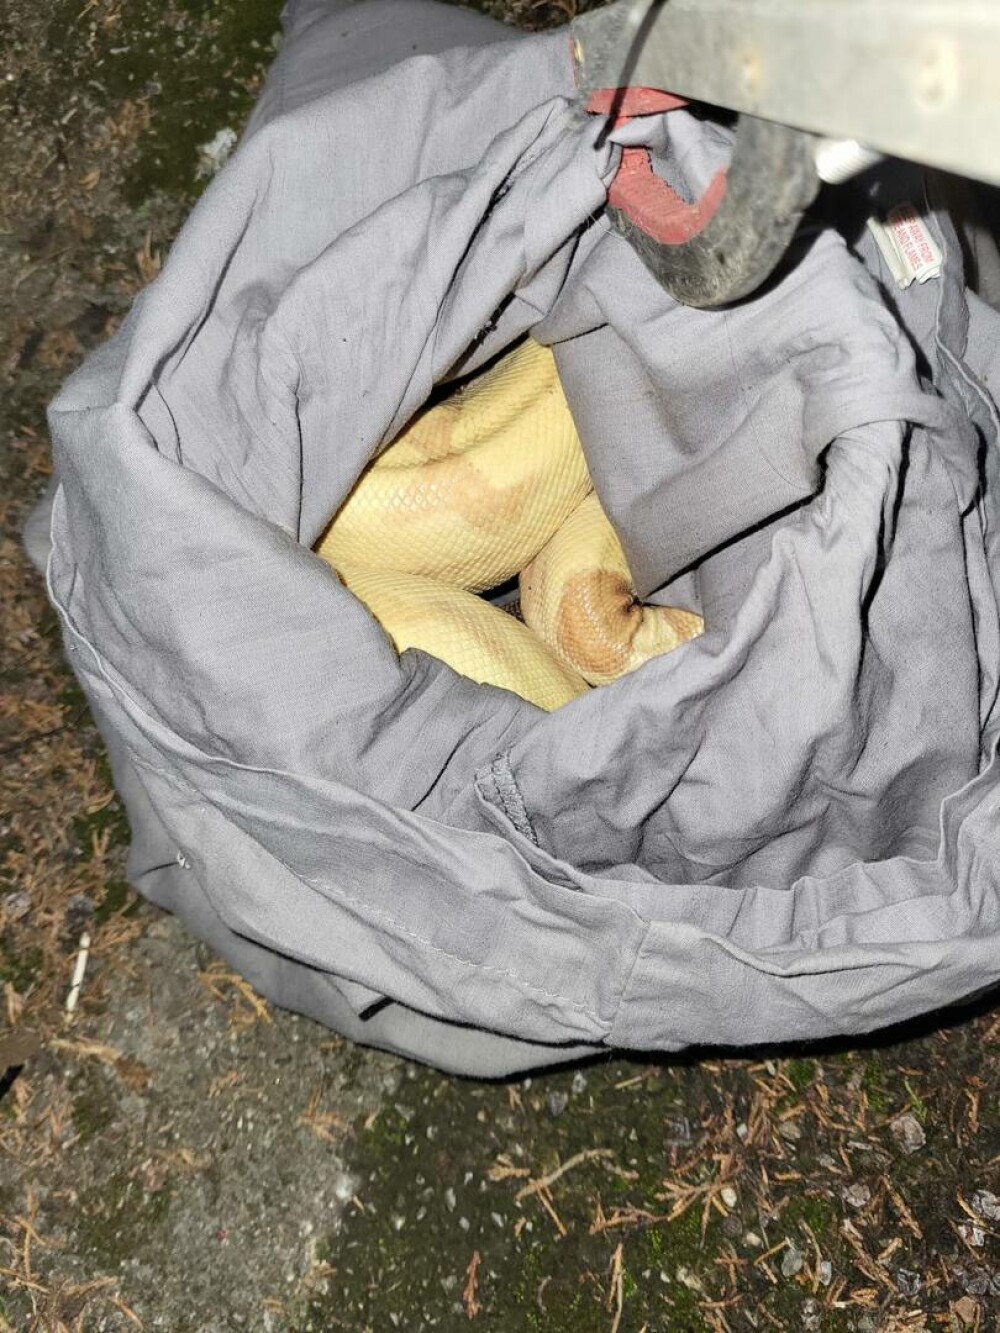 Descoperirea șocantă din gunoi. Ce a găsit un voluntar pe marginea drumului, în mai multe fețe de perne | FOTO - Imaginea 1